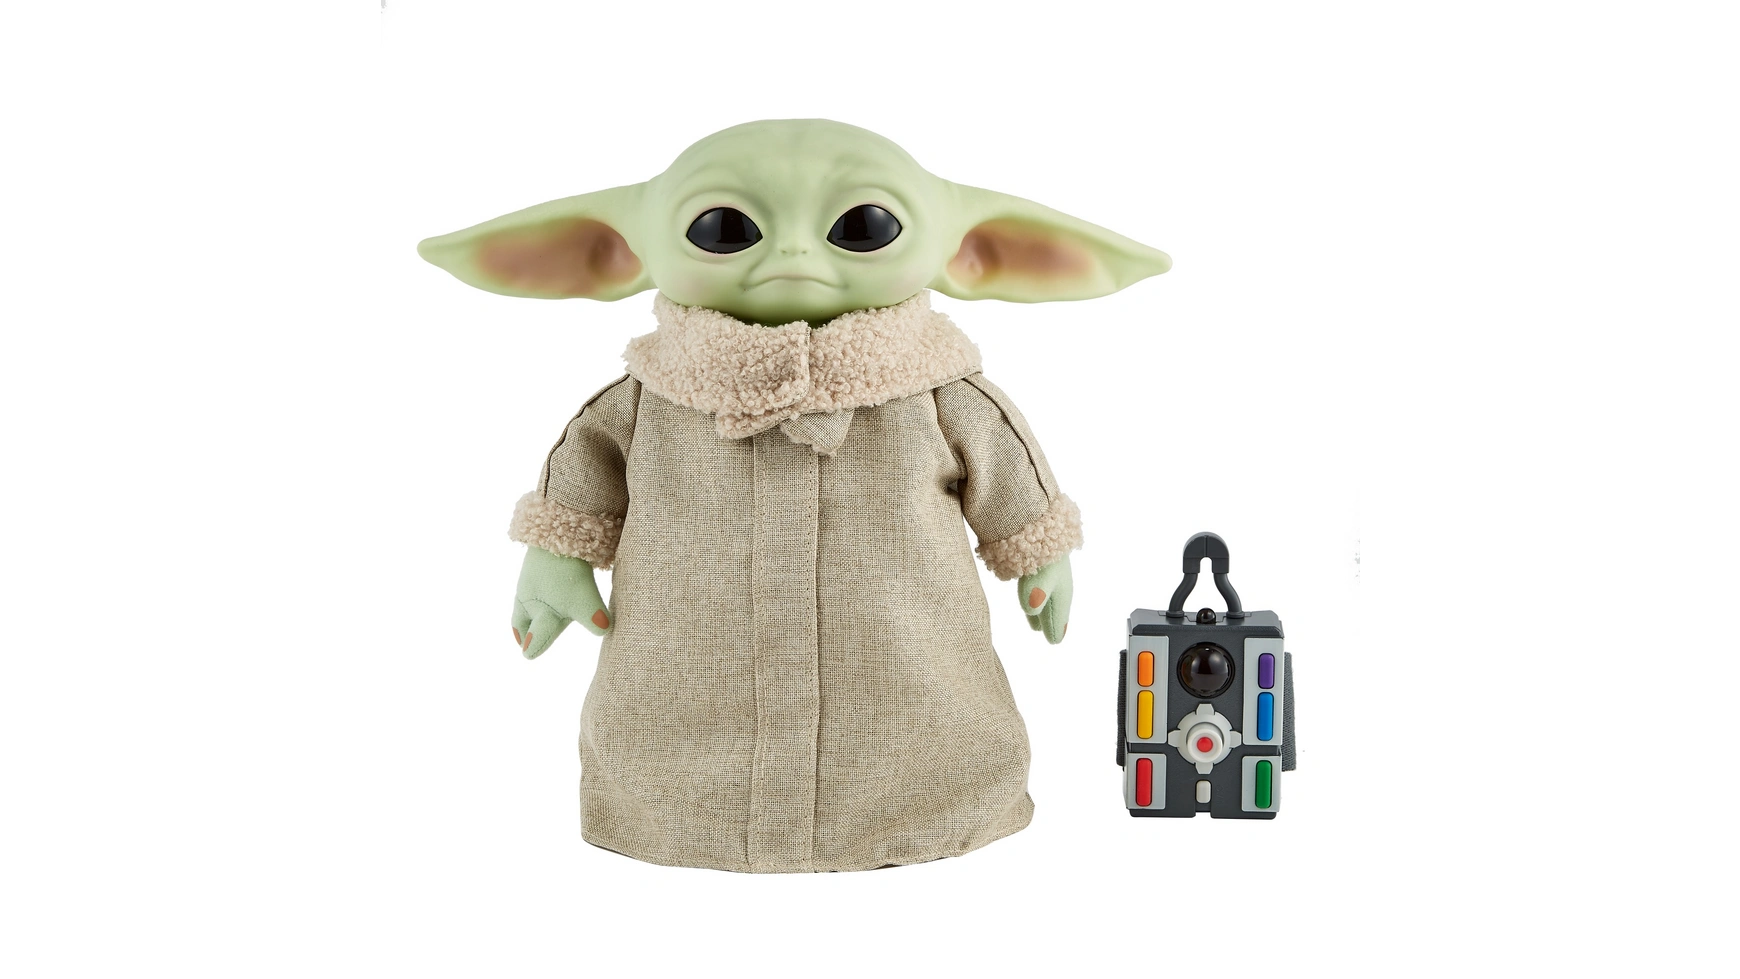 Функциональный плюш Disney Star Wars Mandalorian The Child Baby Yoda фигурка титаны герои звездных войн ezra bridger 26 см